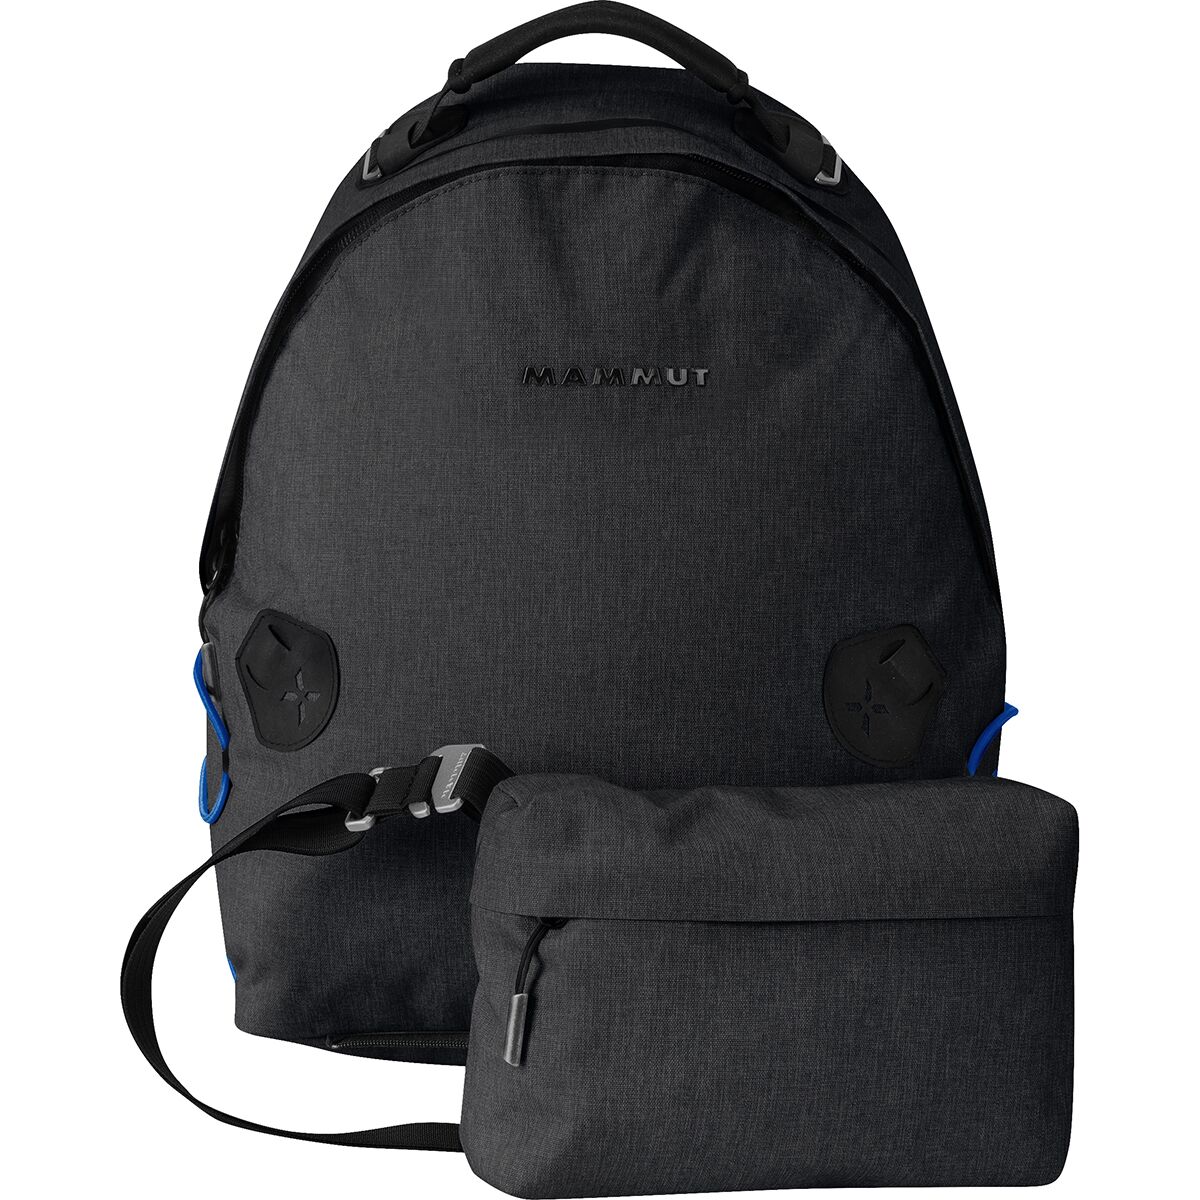 Delta 18L Backpack - Black